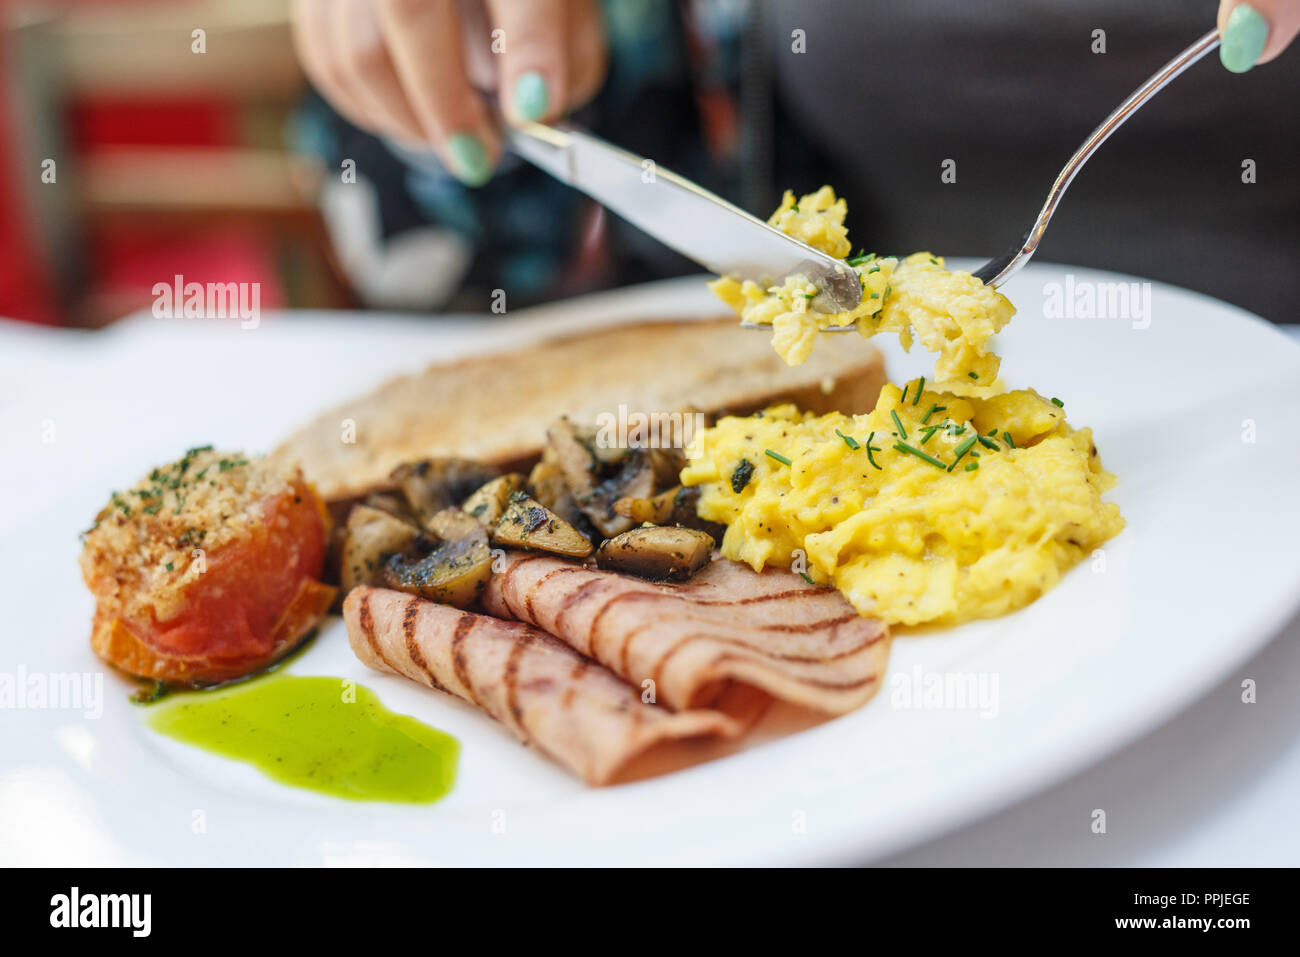 Chiudere il cibo fotografia stile inglese prima colazione Foto Stock